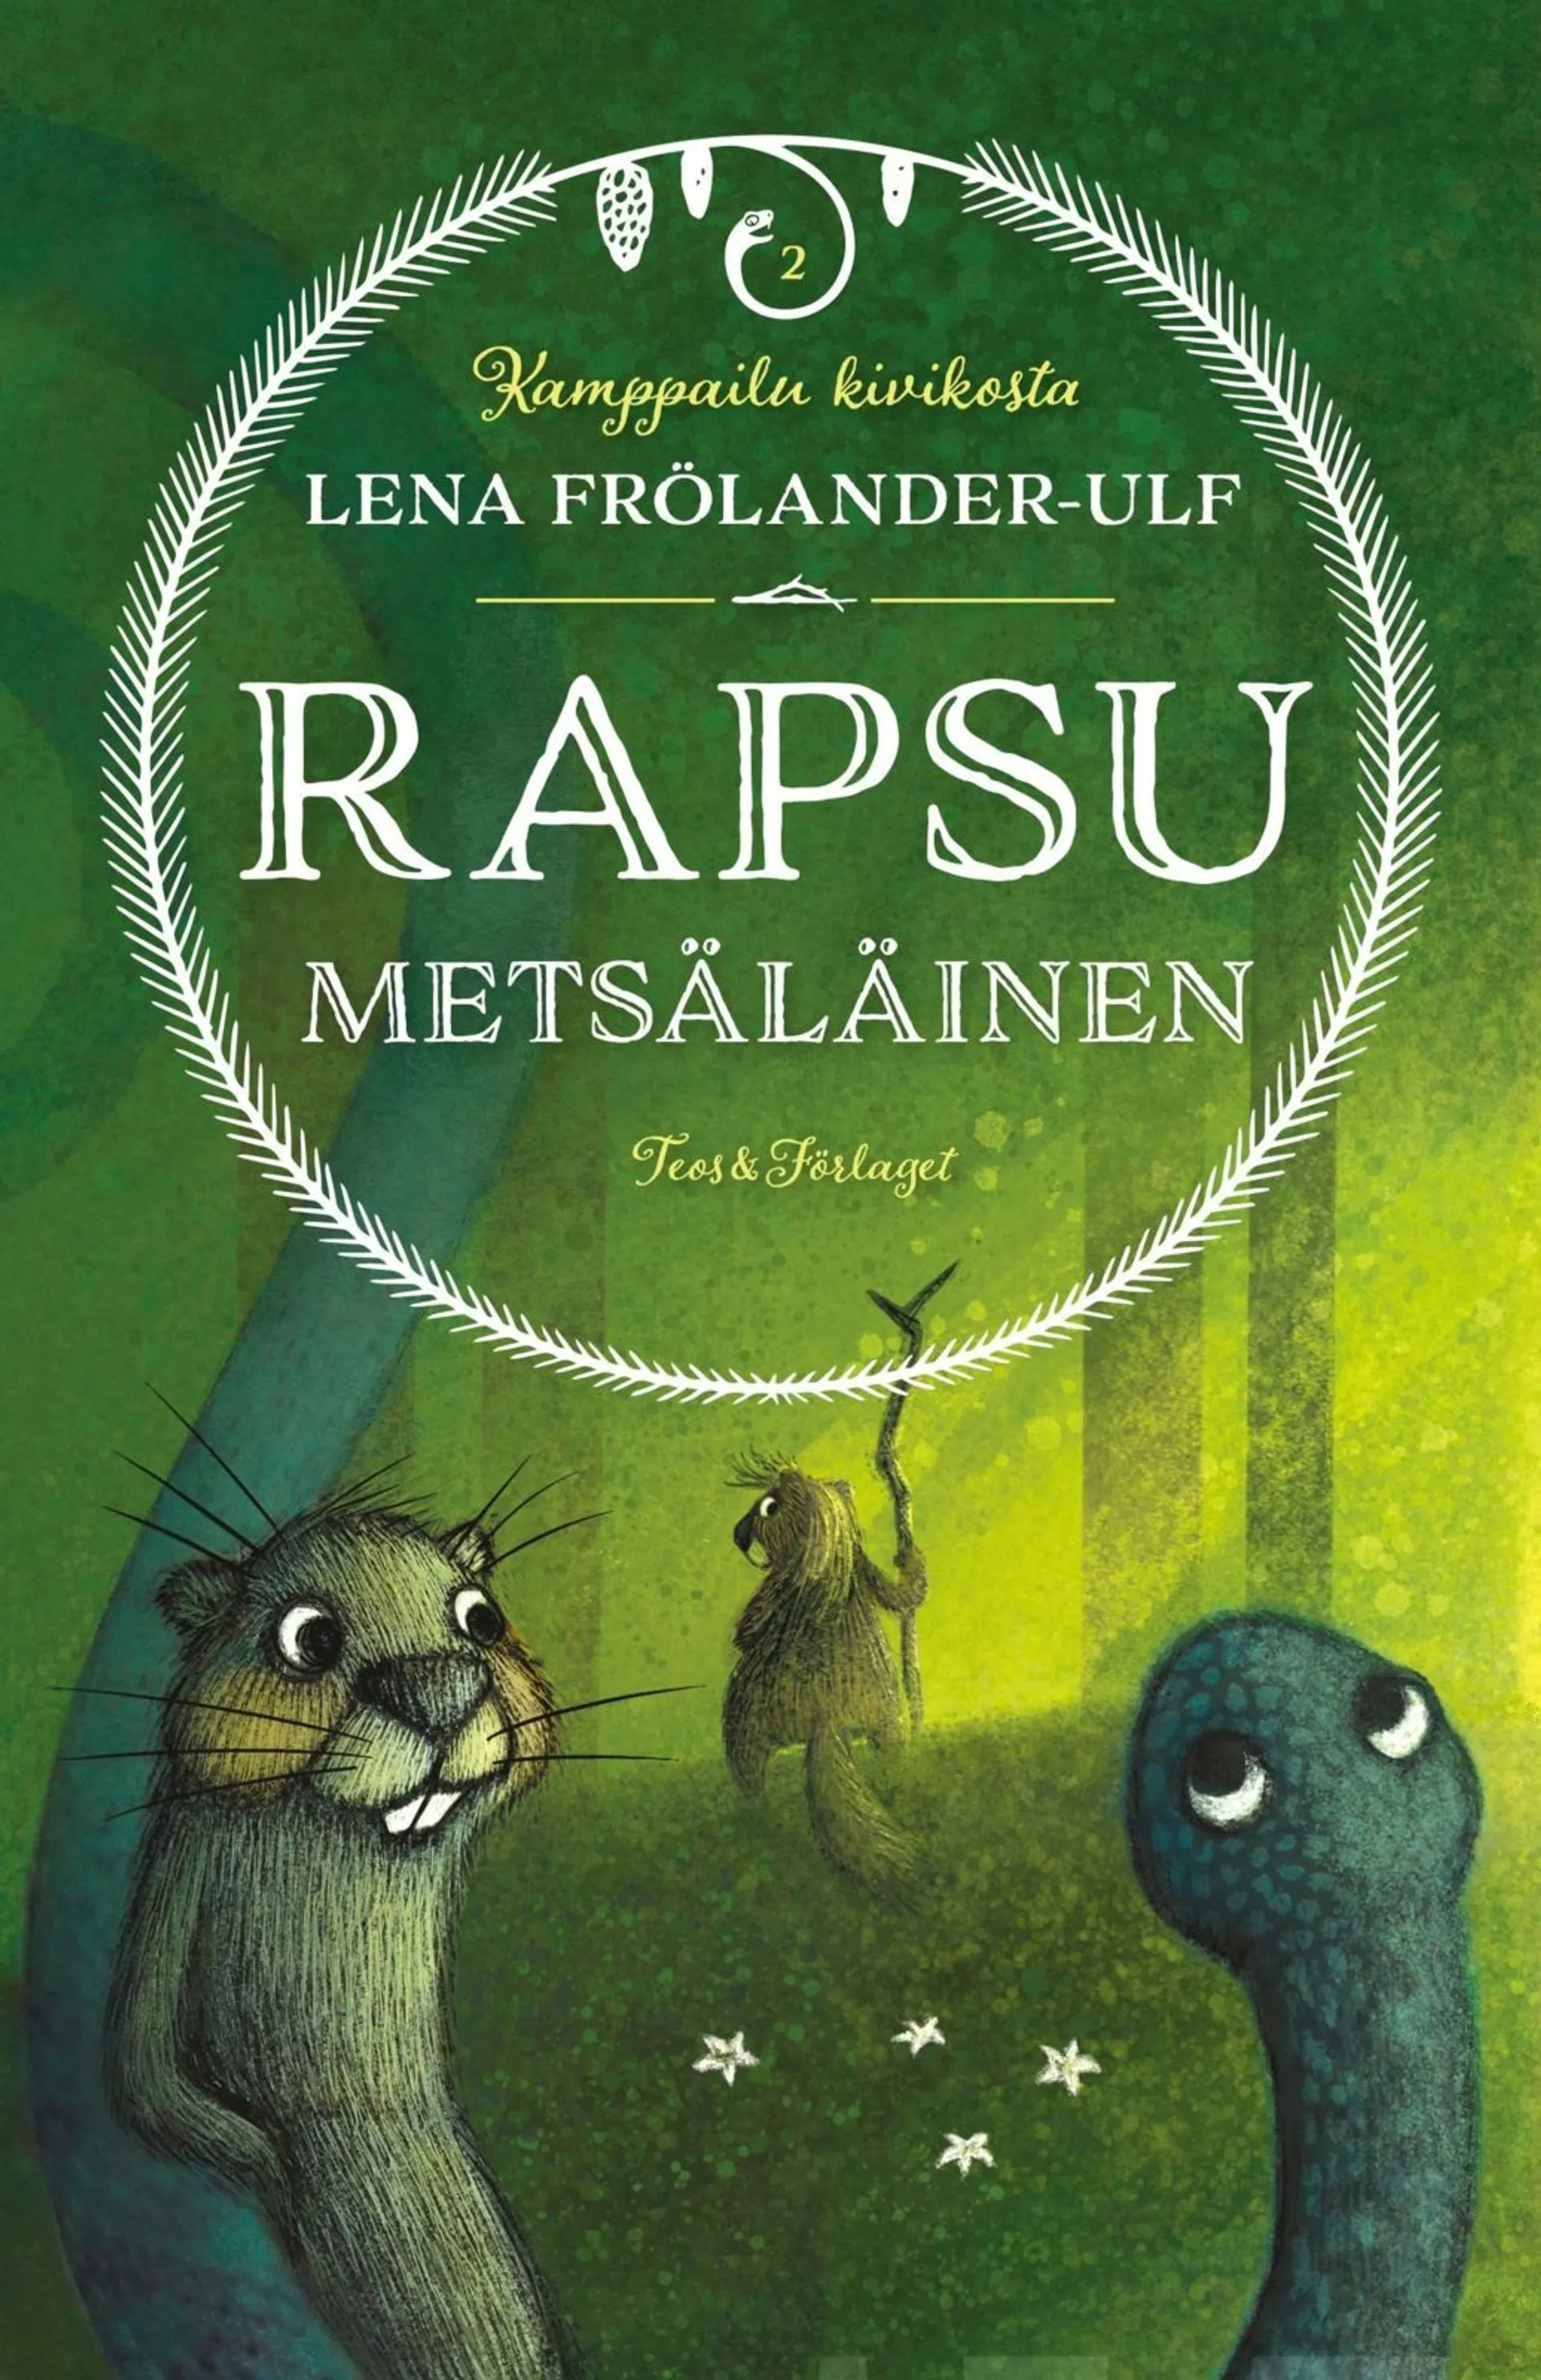 Lena, Rapsu Metsäläinen - Kamppailu kivikosta 2